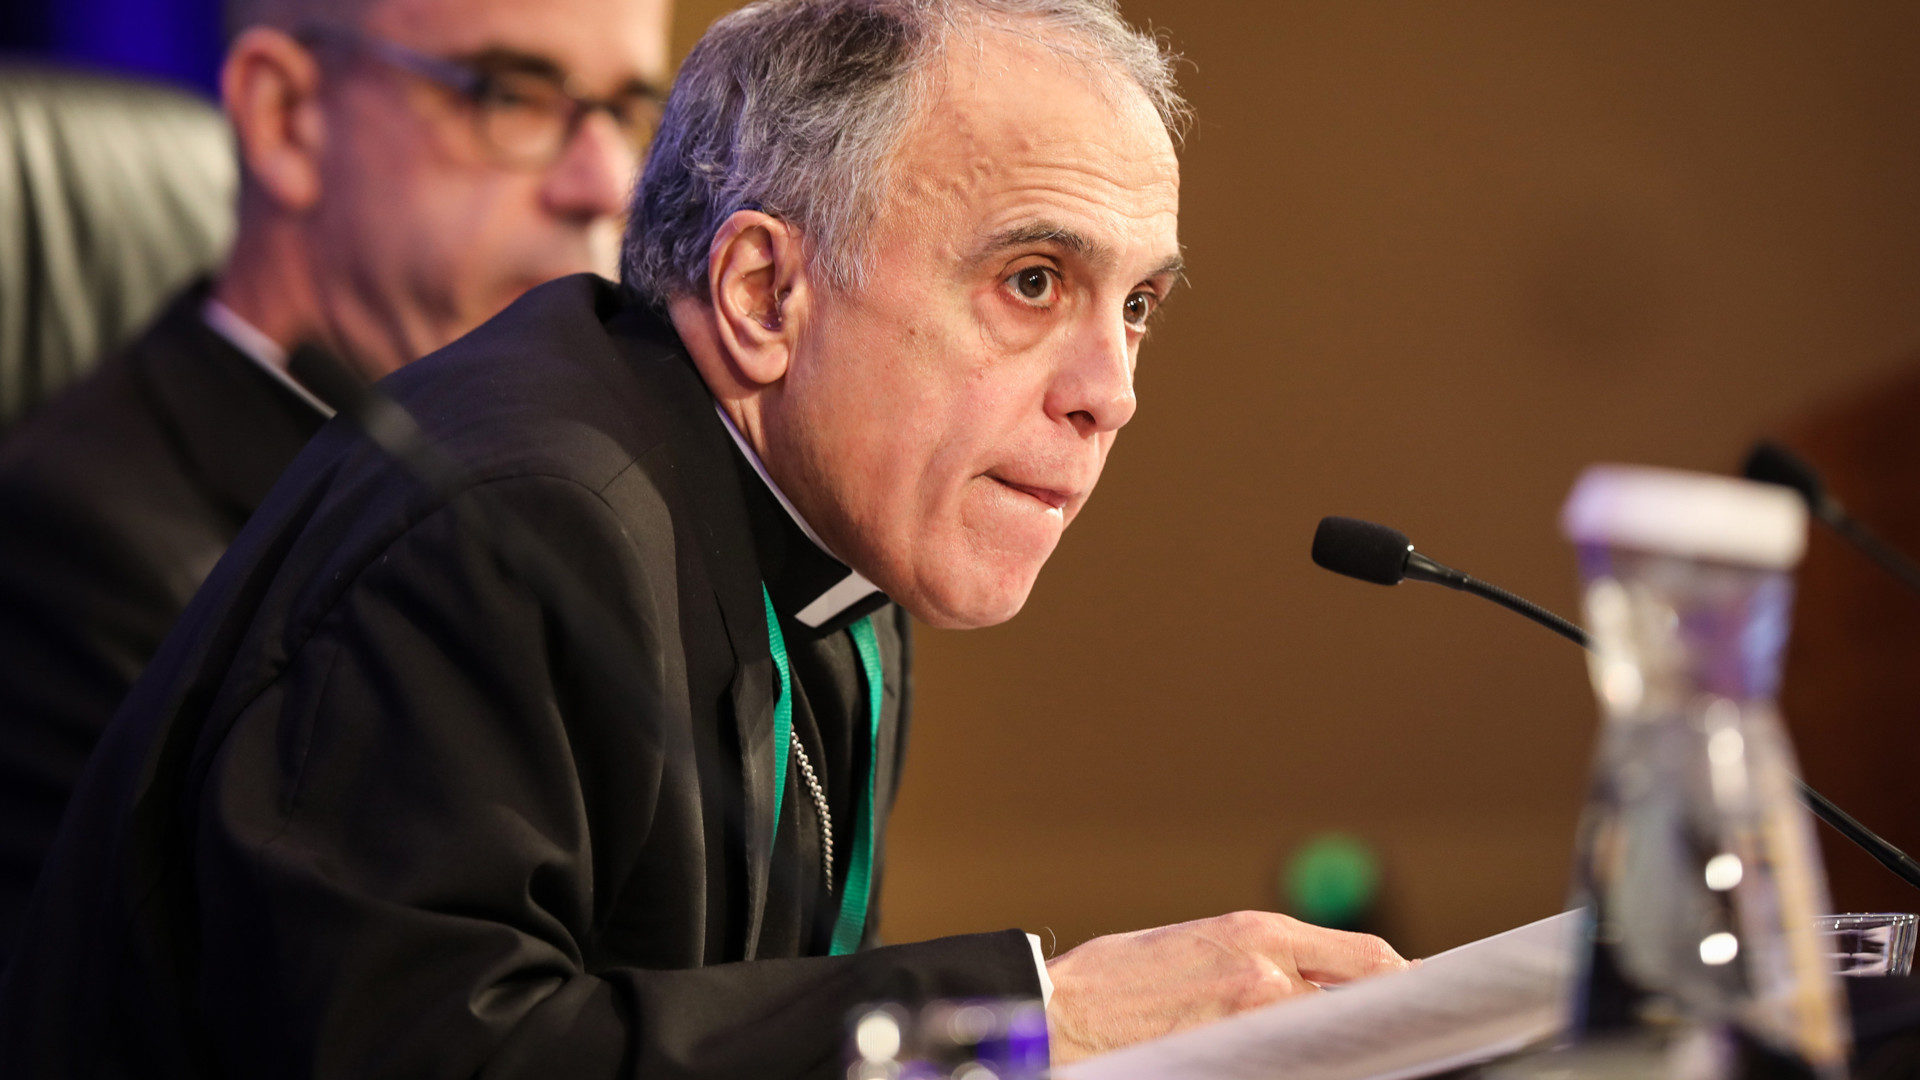 Daniel Nicholas DiNardo an der Versammlung der US-amerikanischen Bischofskonferenz